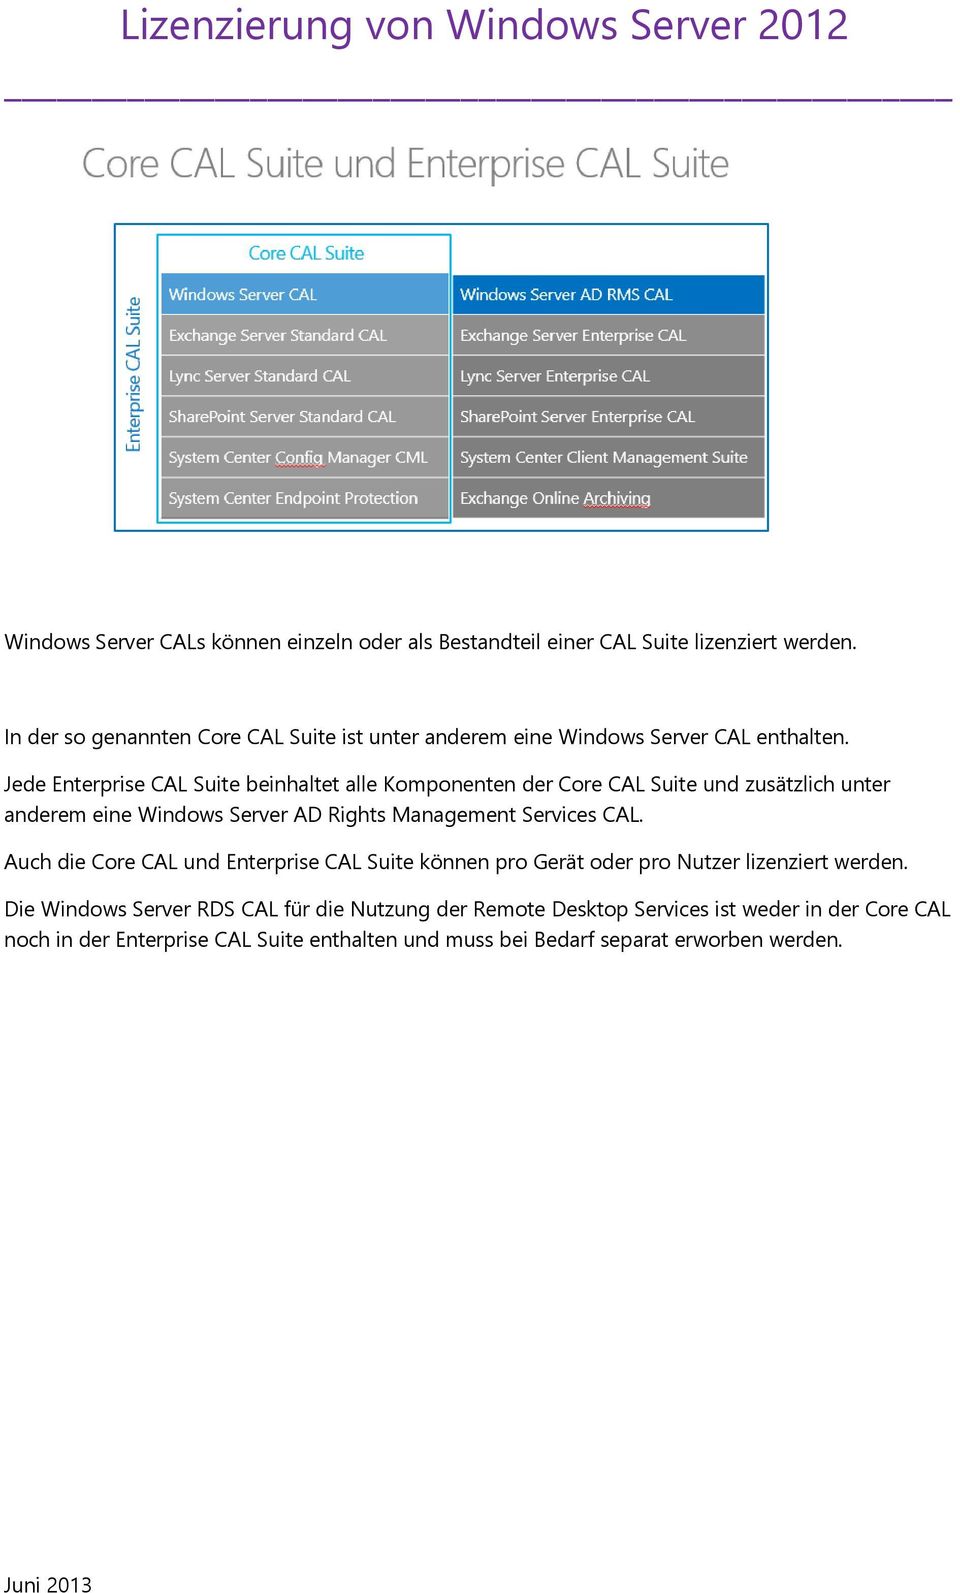 Jede Enterprise CAL Suite beinhaltet alle Komponenten der Core CAL Suite und zusätzlich unter anderem eine Windows Server AD Rights Management Services